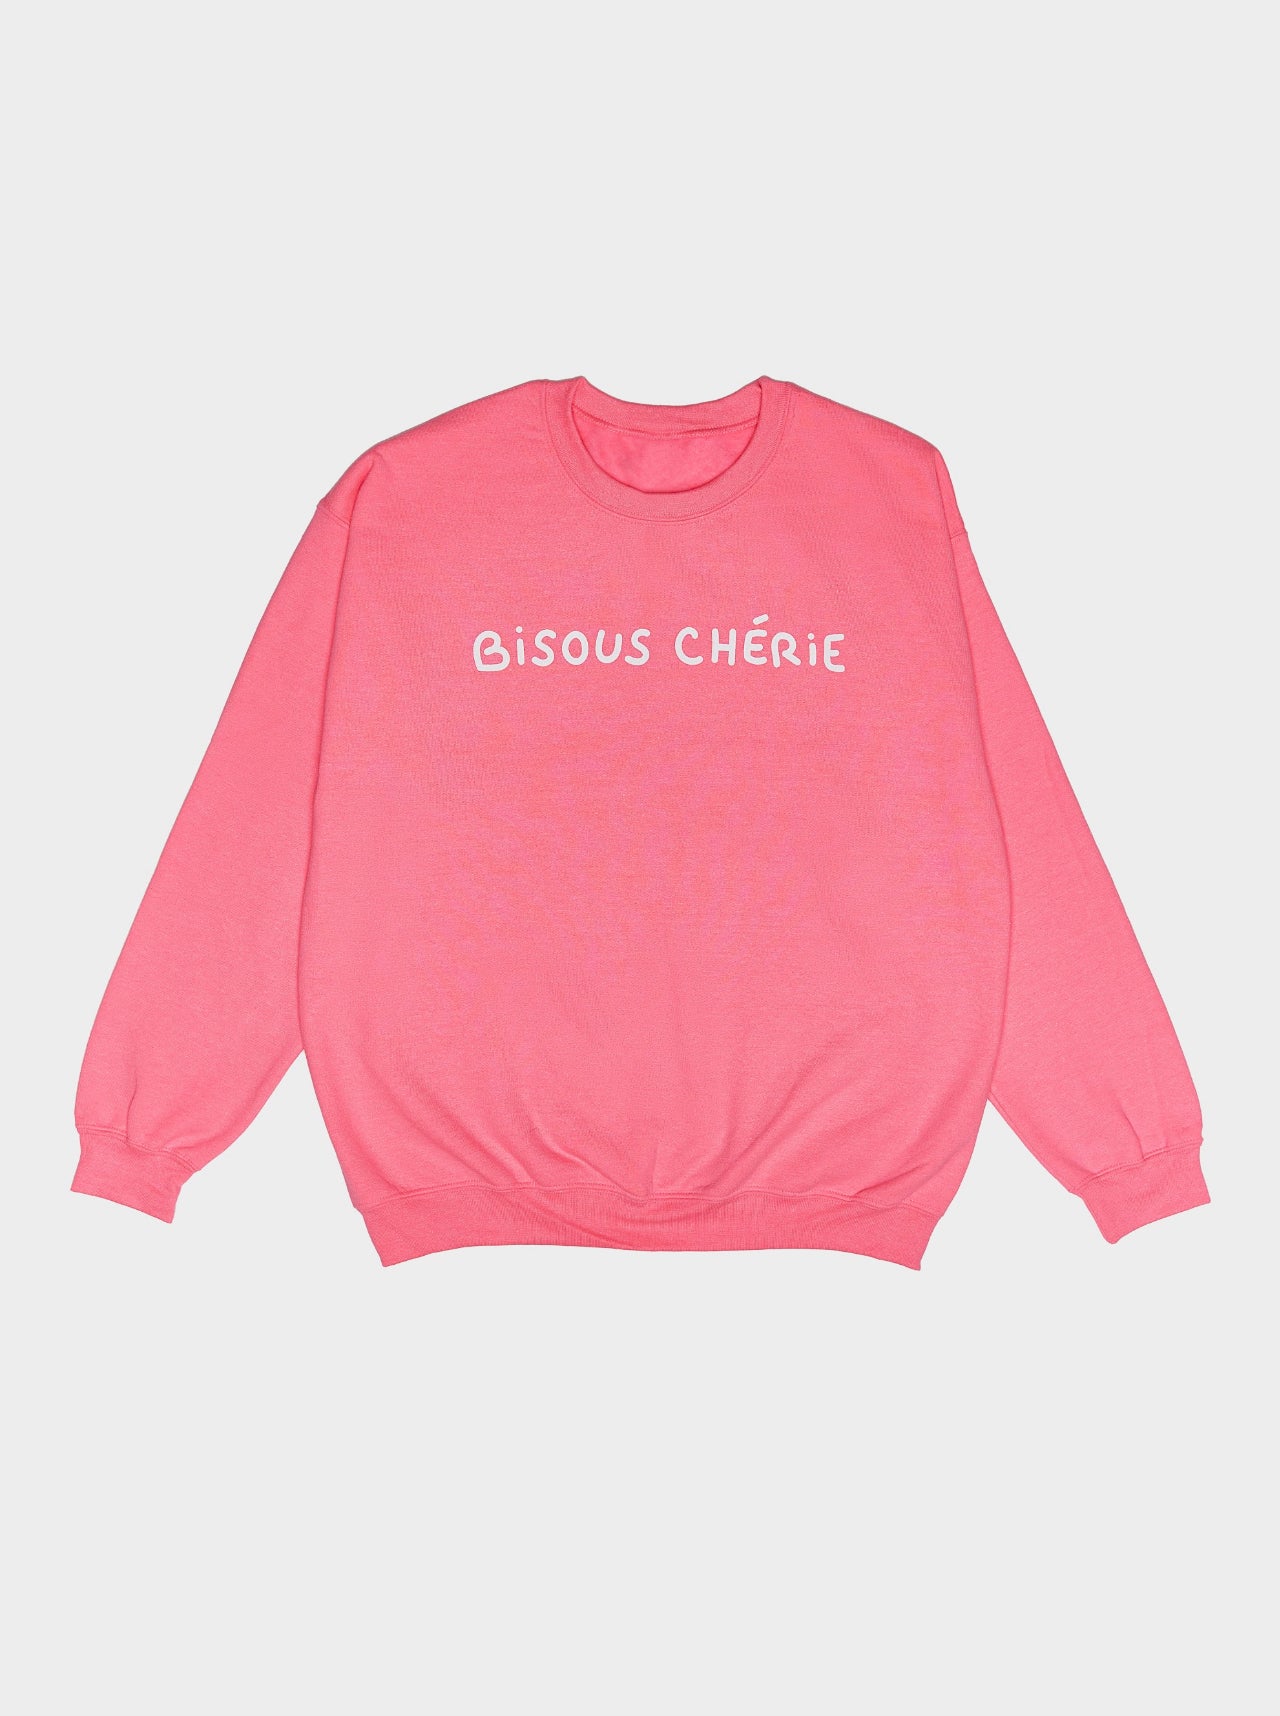 Chapitre 2- Bisous Cherie- Hot Pink